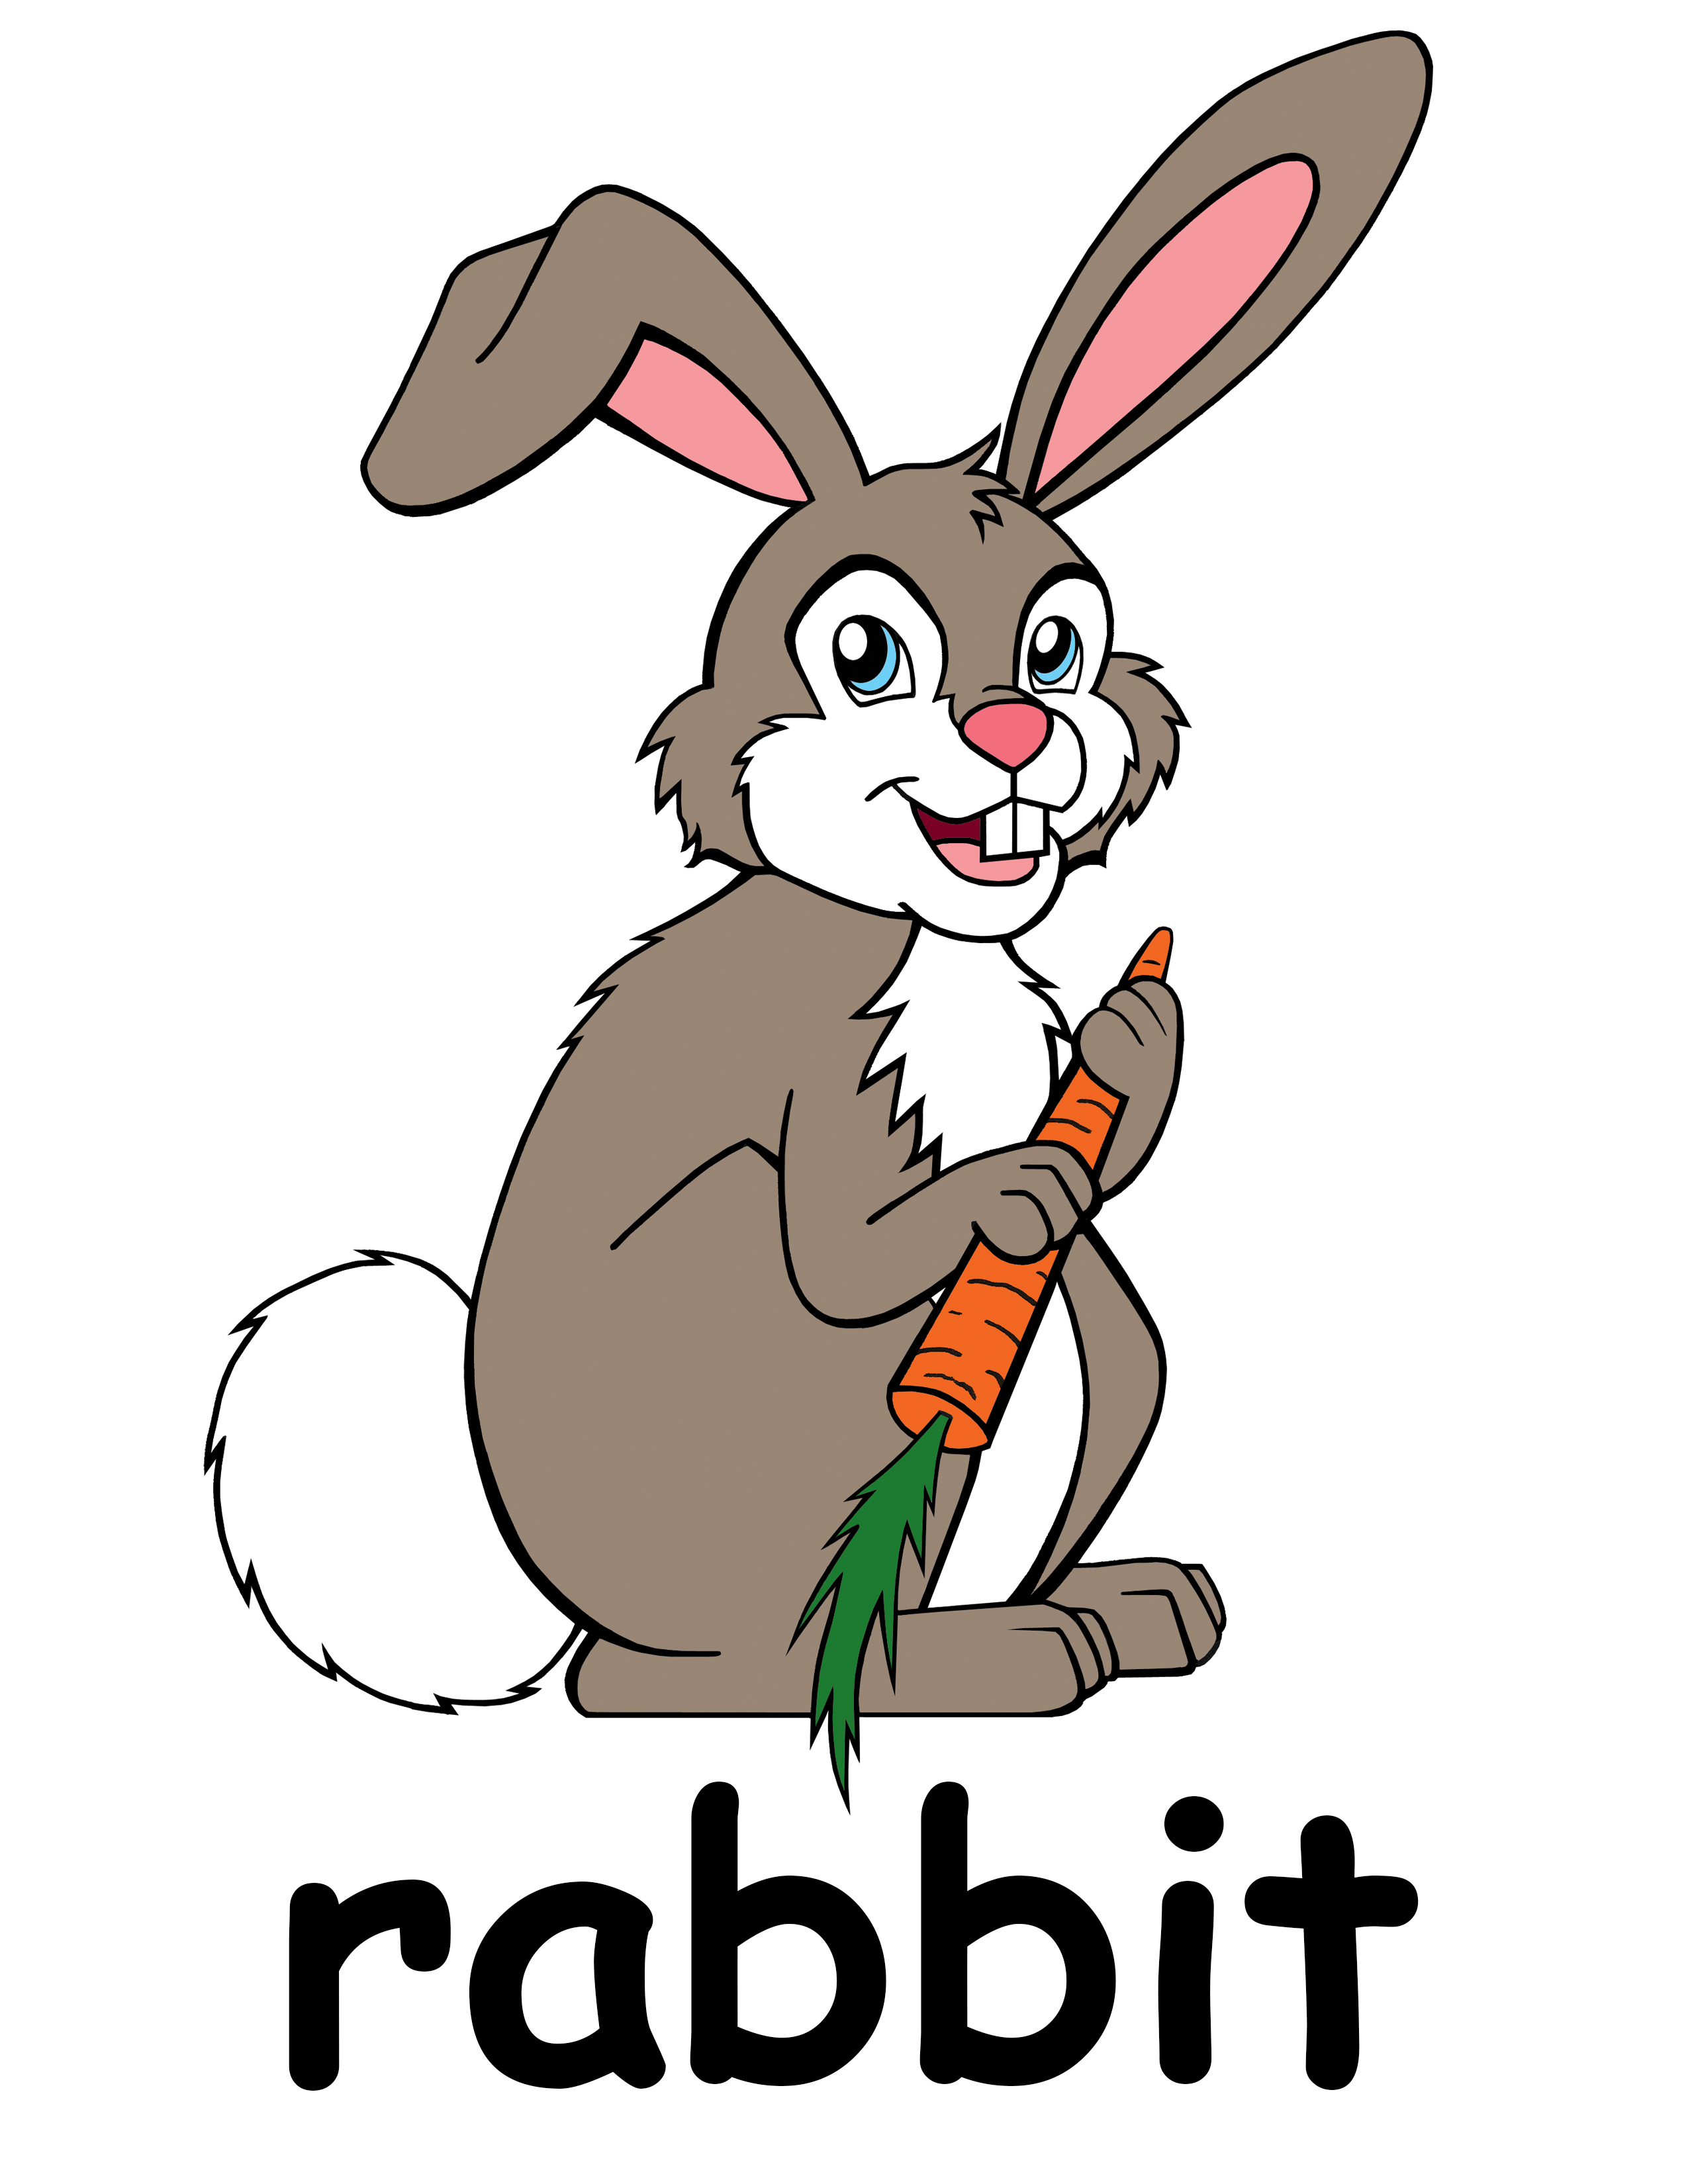 Rabbit clip art outline free clipart images clipartix